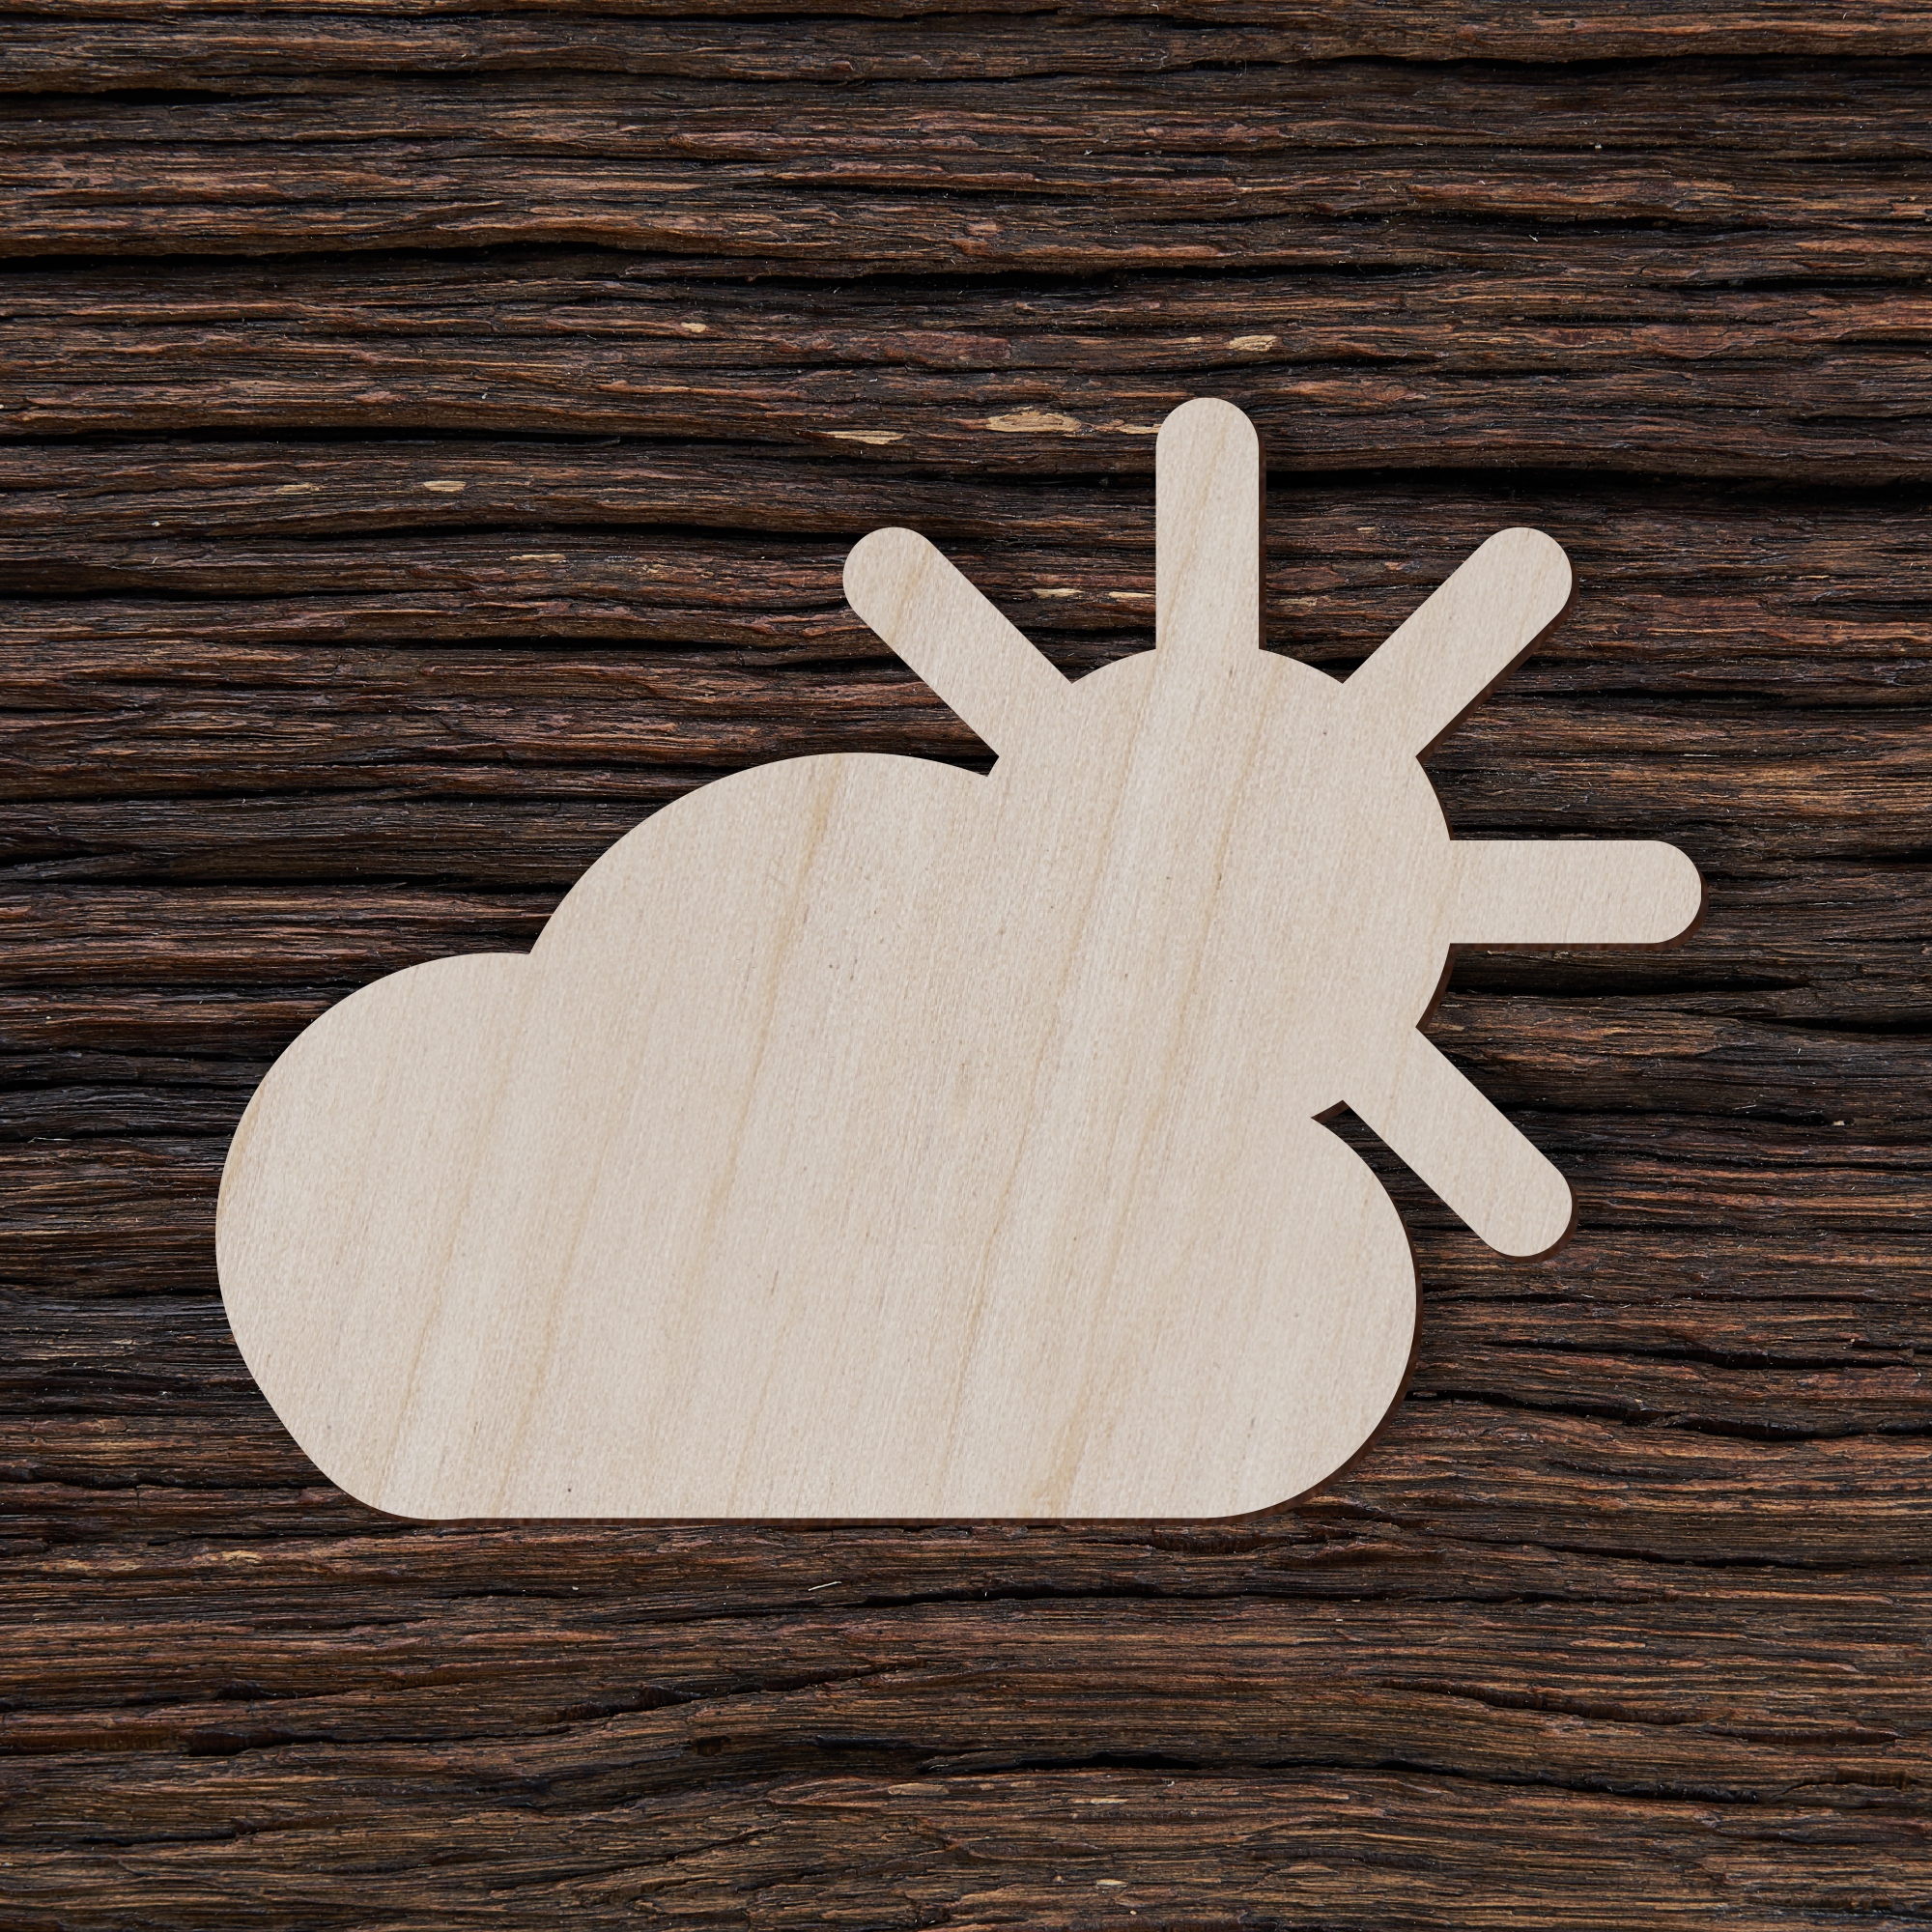 6Oro prognozės simbolis debesuota su pragiedruliais - medinis gaminys, pjautas lazeriu - dekoravimui ir dažymui